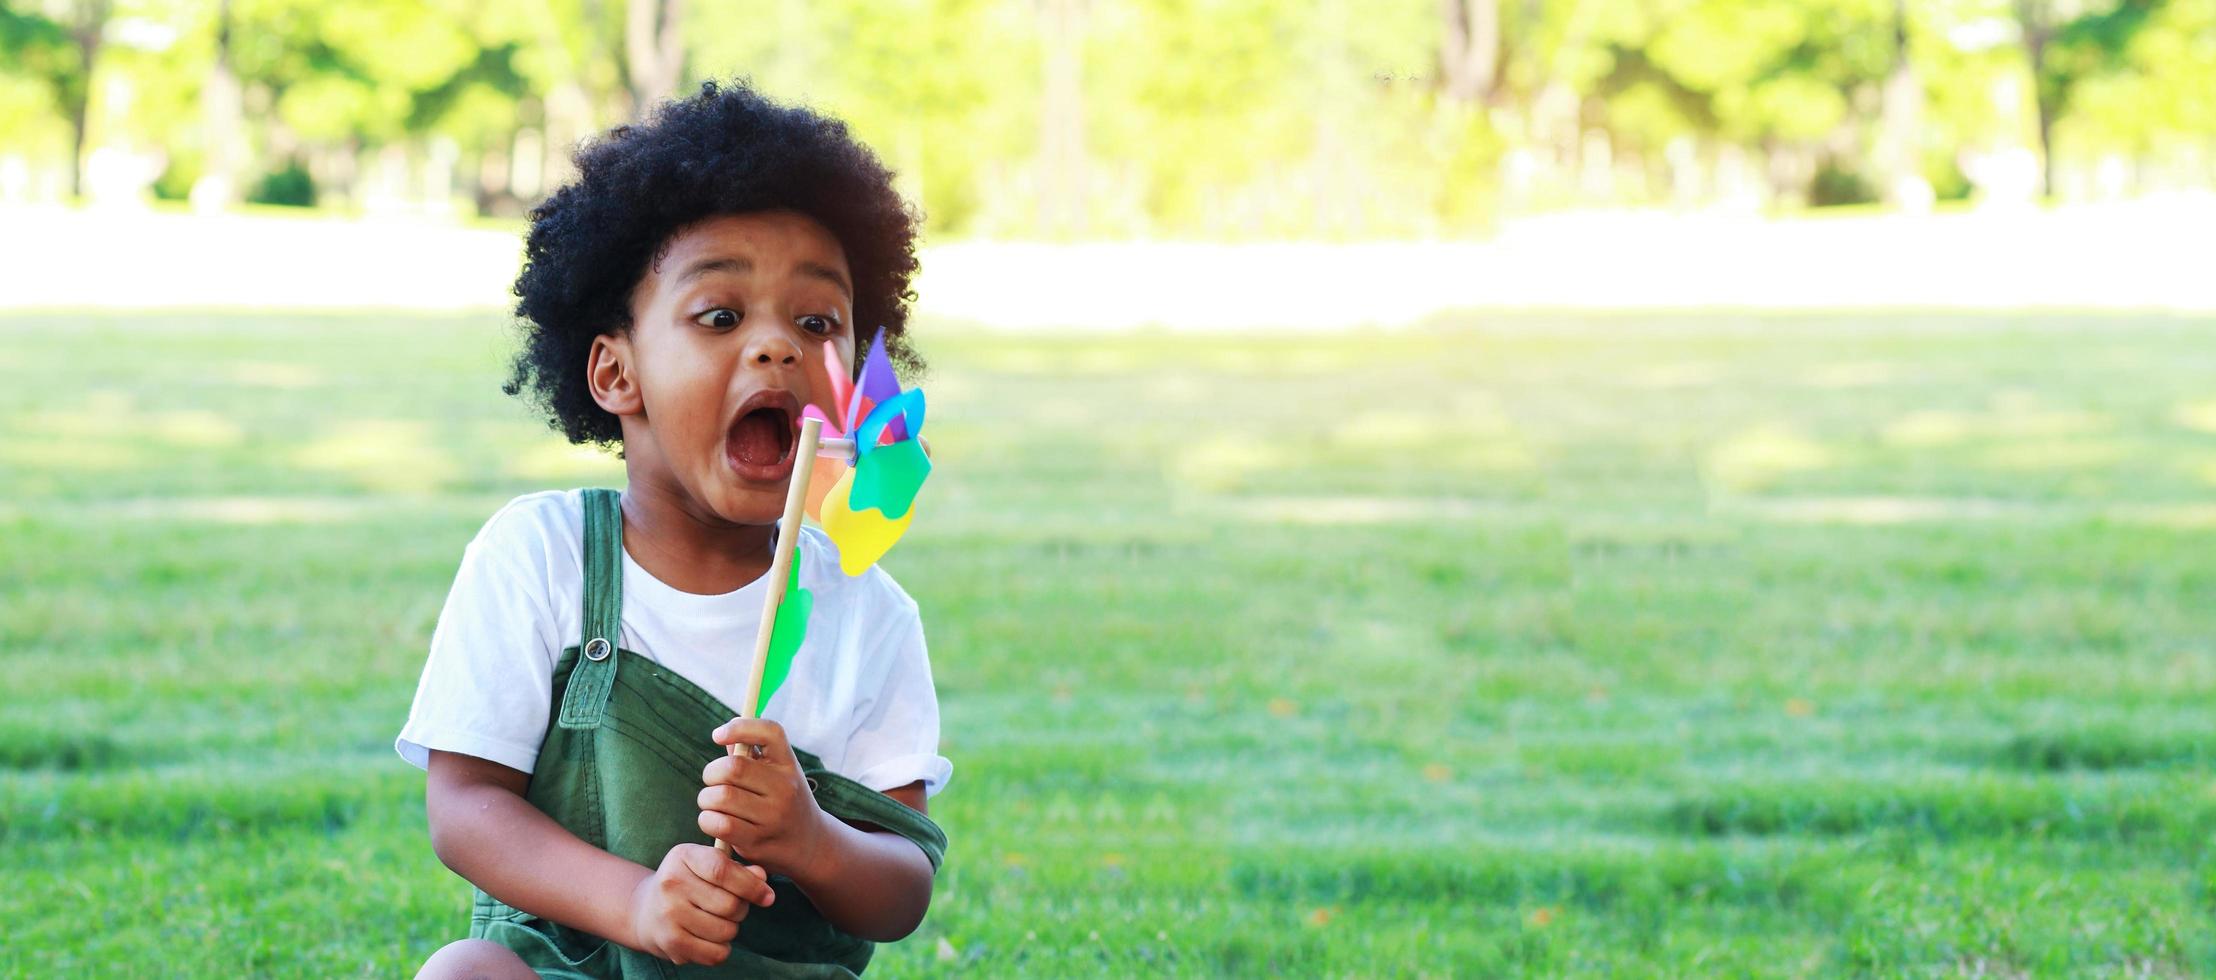 Portrait de garçon jouant à l'éolienne dans le parc joyeusement et heureusement en été photo